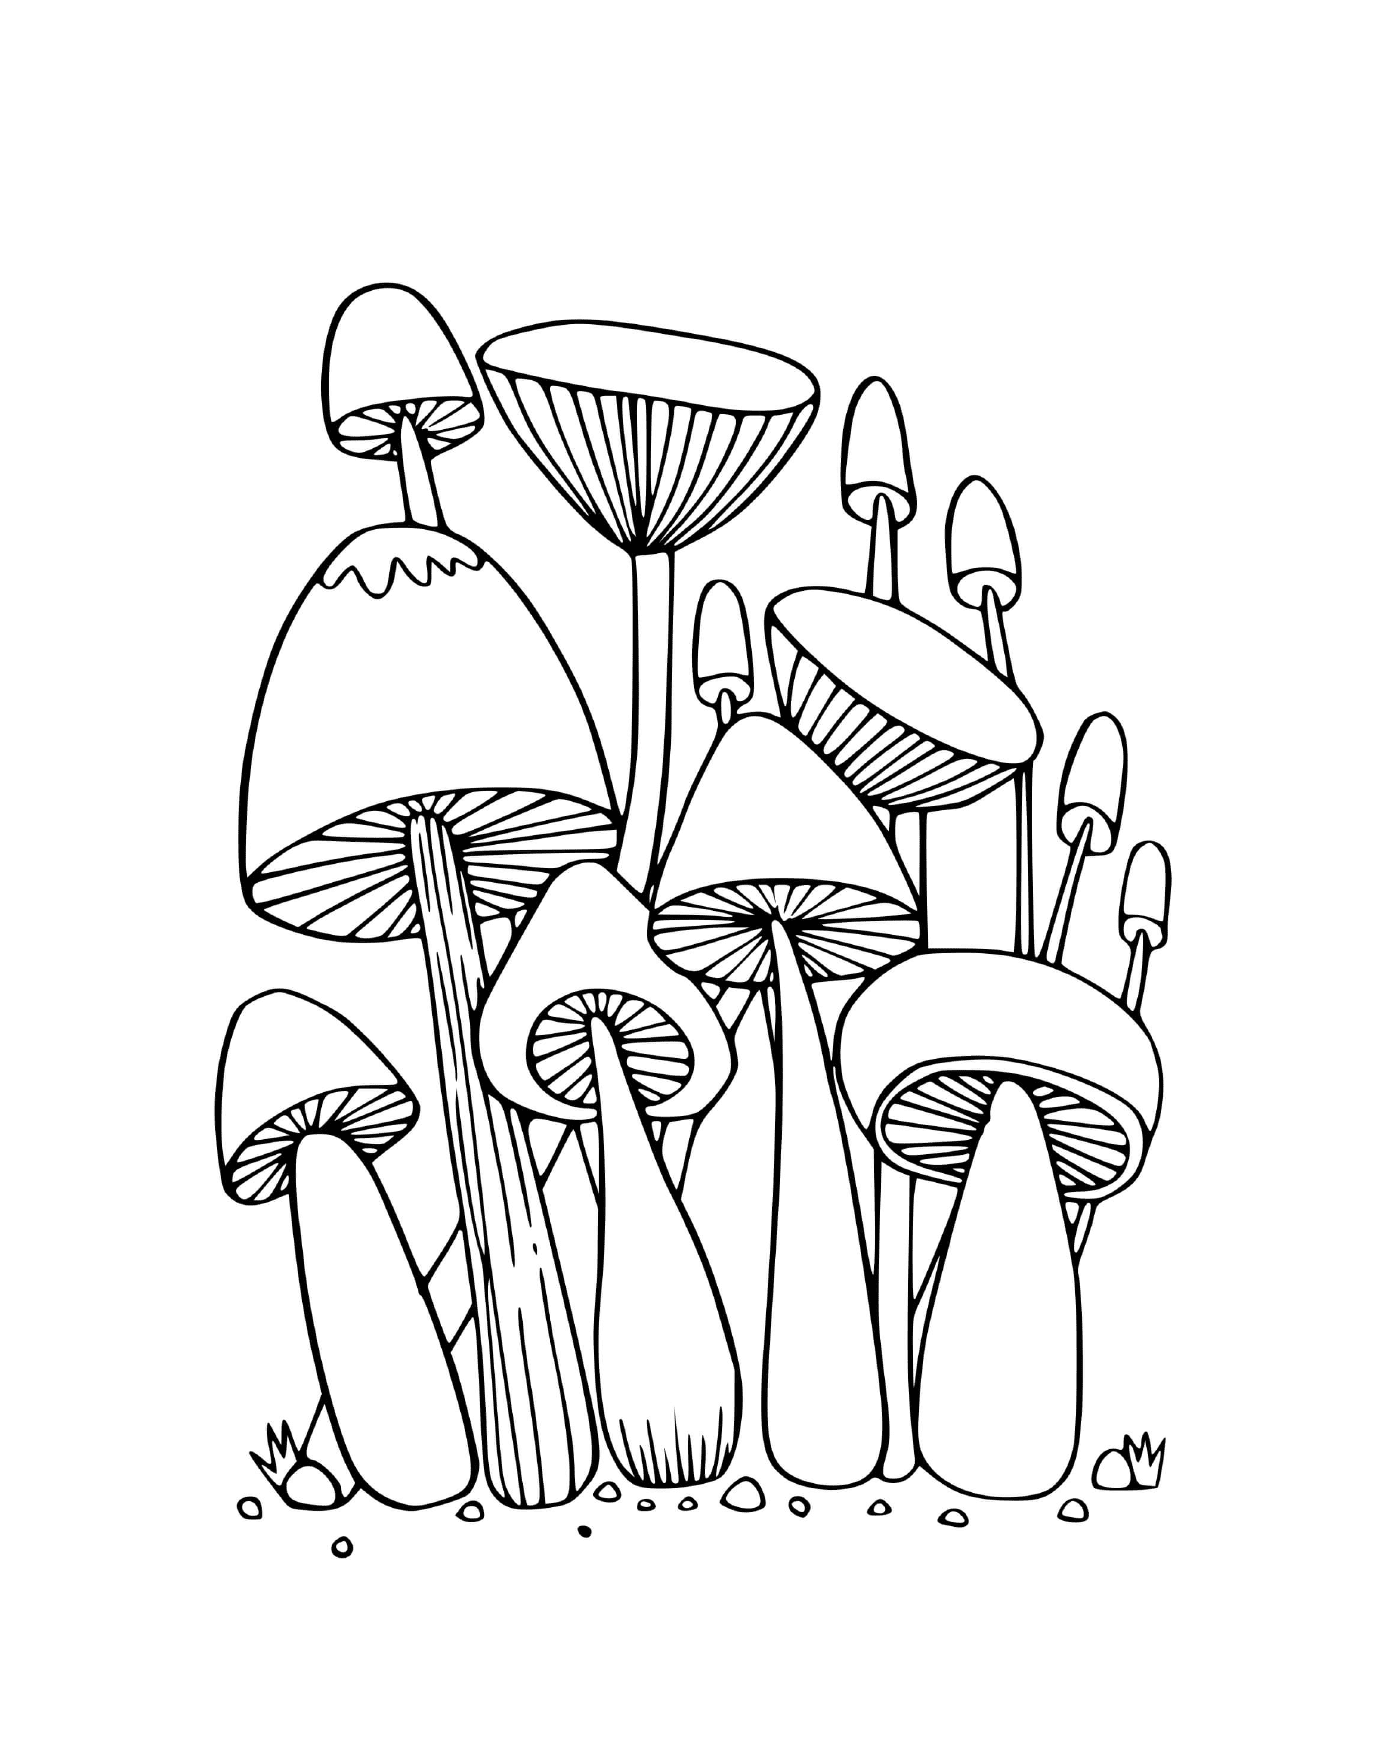  Лесные грибы сидят в траве 